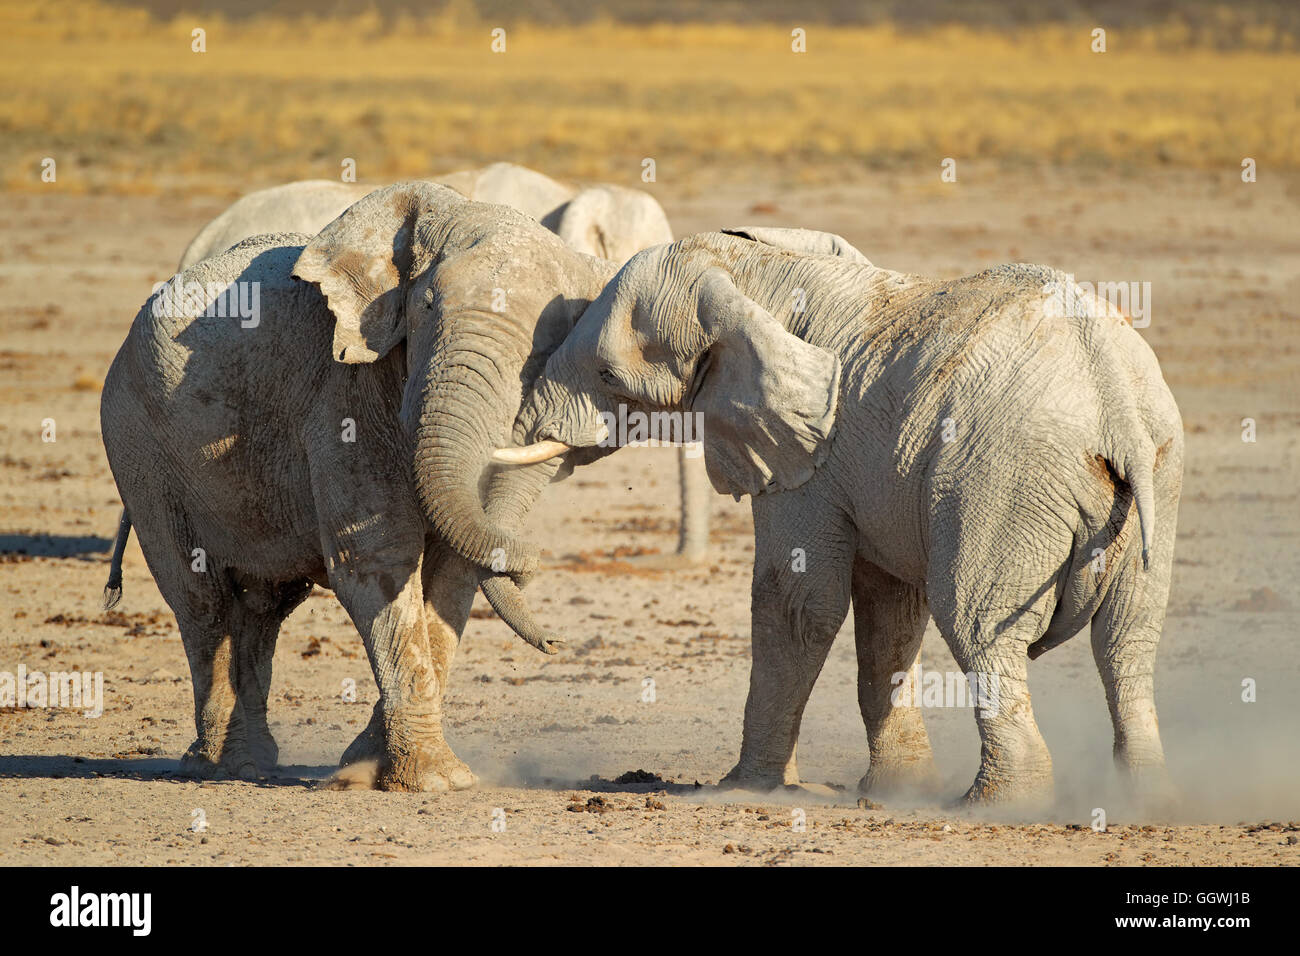 L'éléphant africain (Loxodonta africana) combats de taureaux, Etosha National Park, Namibie Banque D'Images